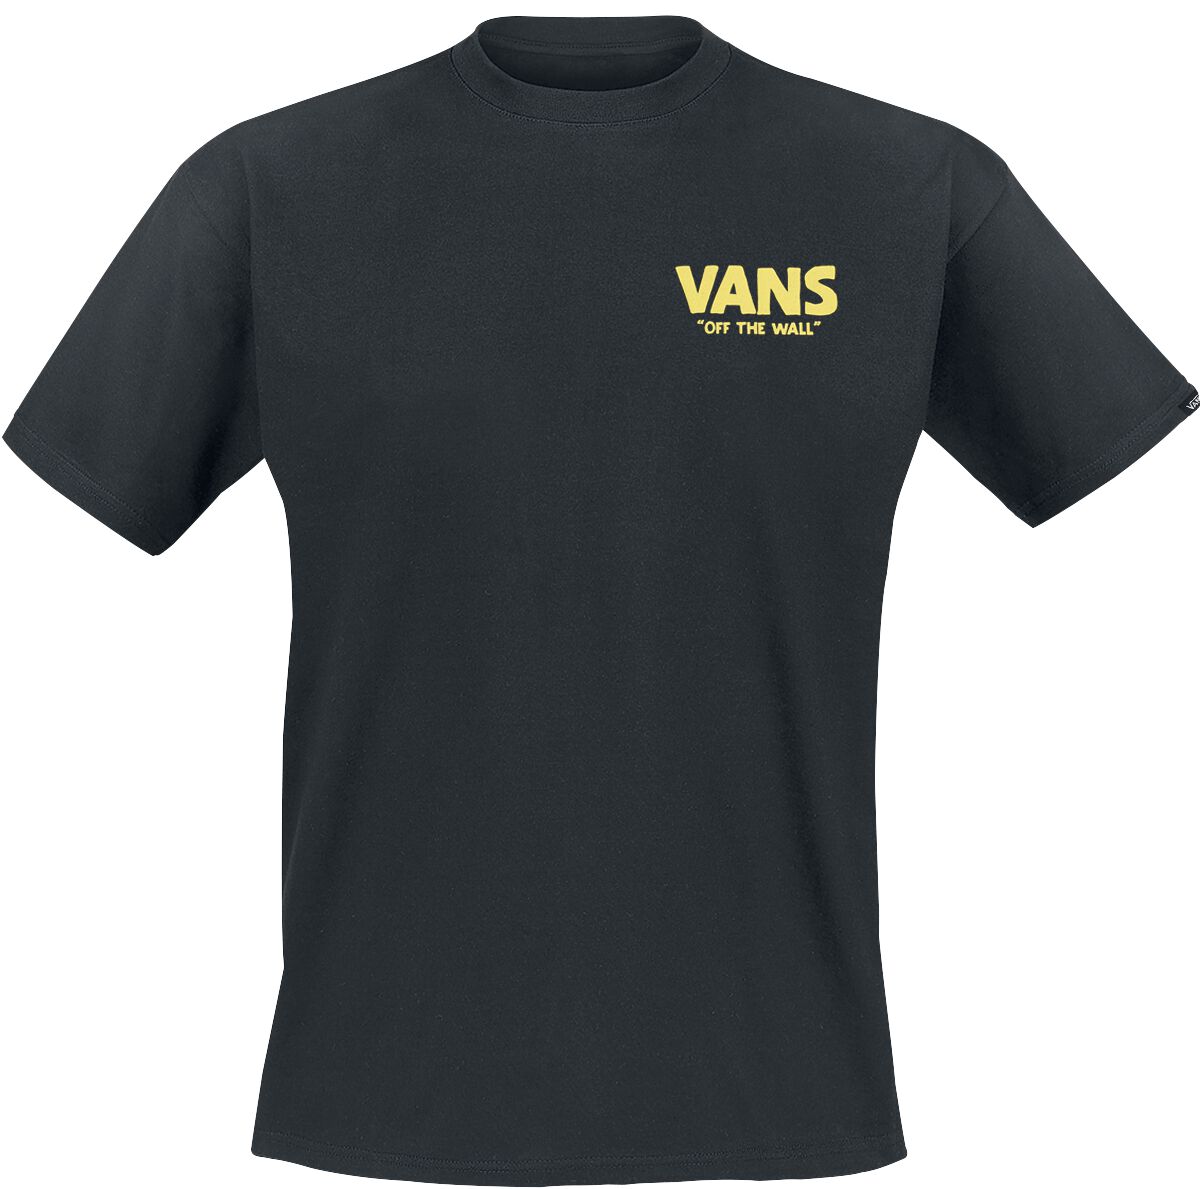 Vans T-Shirt - Stay Cool Tee - S bis XXL - für Männer - Größe XXL - schwarz